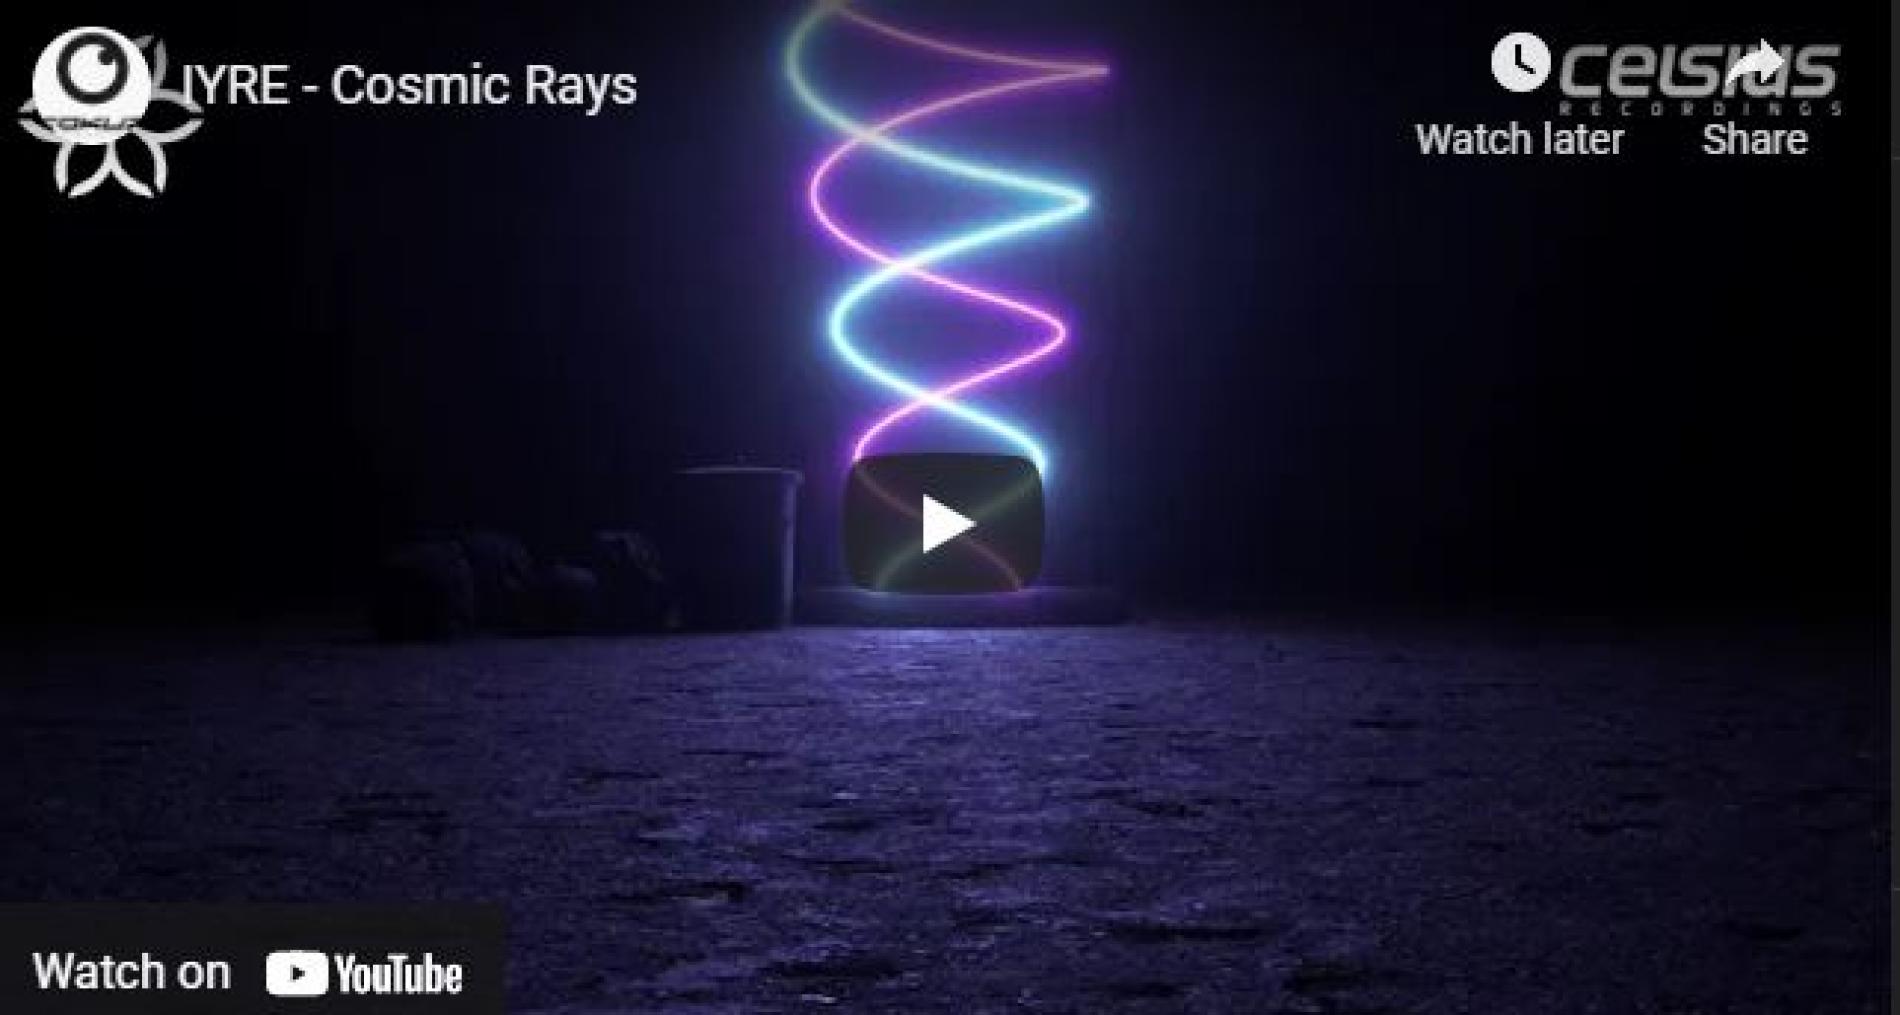 New Music : IYRE – Cosmic Rays